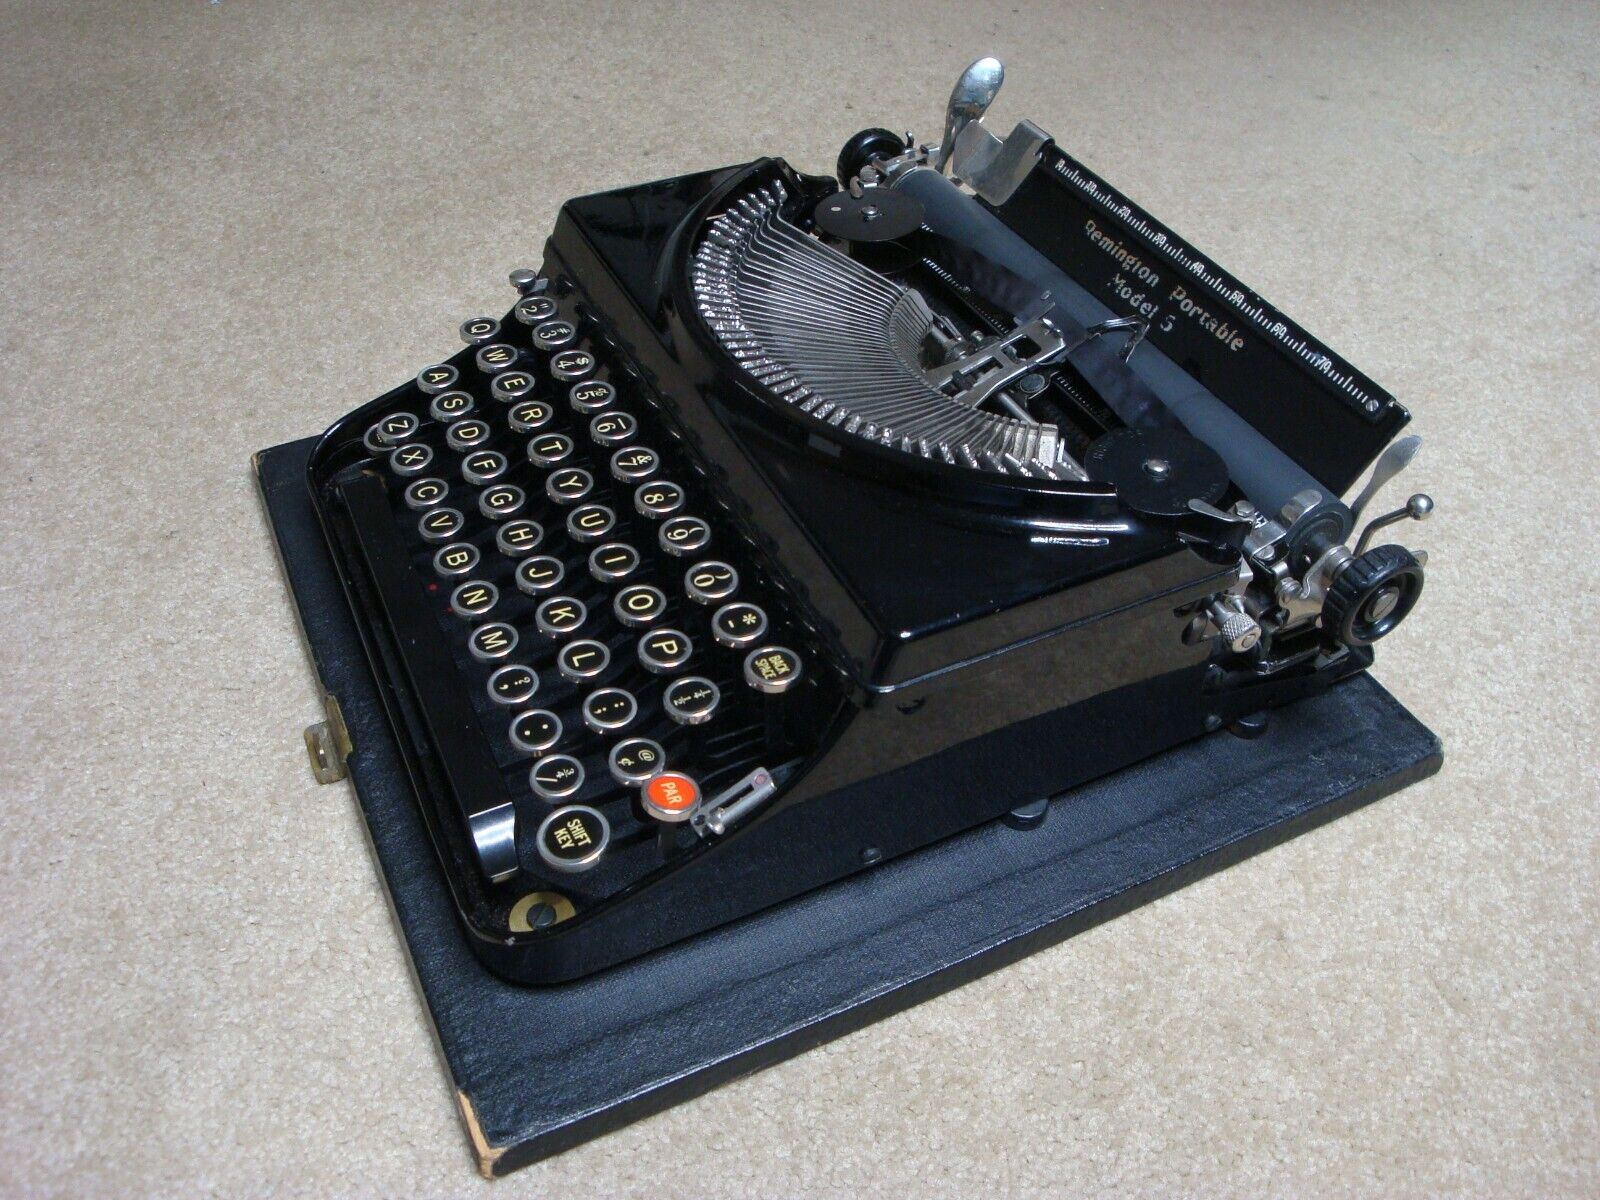 Vintage 1934 REMINGTON Model 5 Portable Typewriter w/Case  - Working